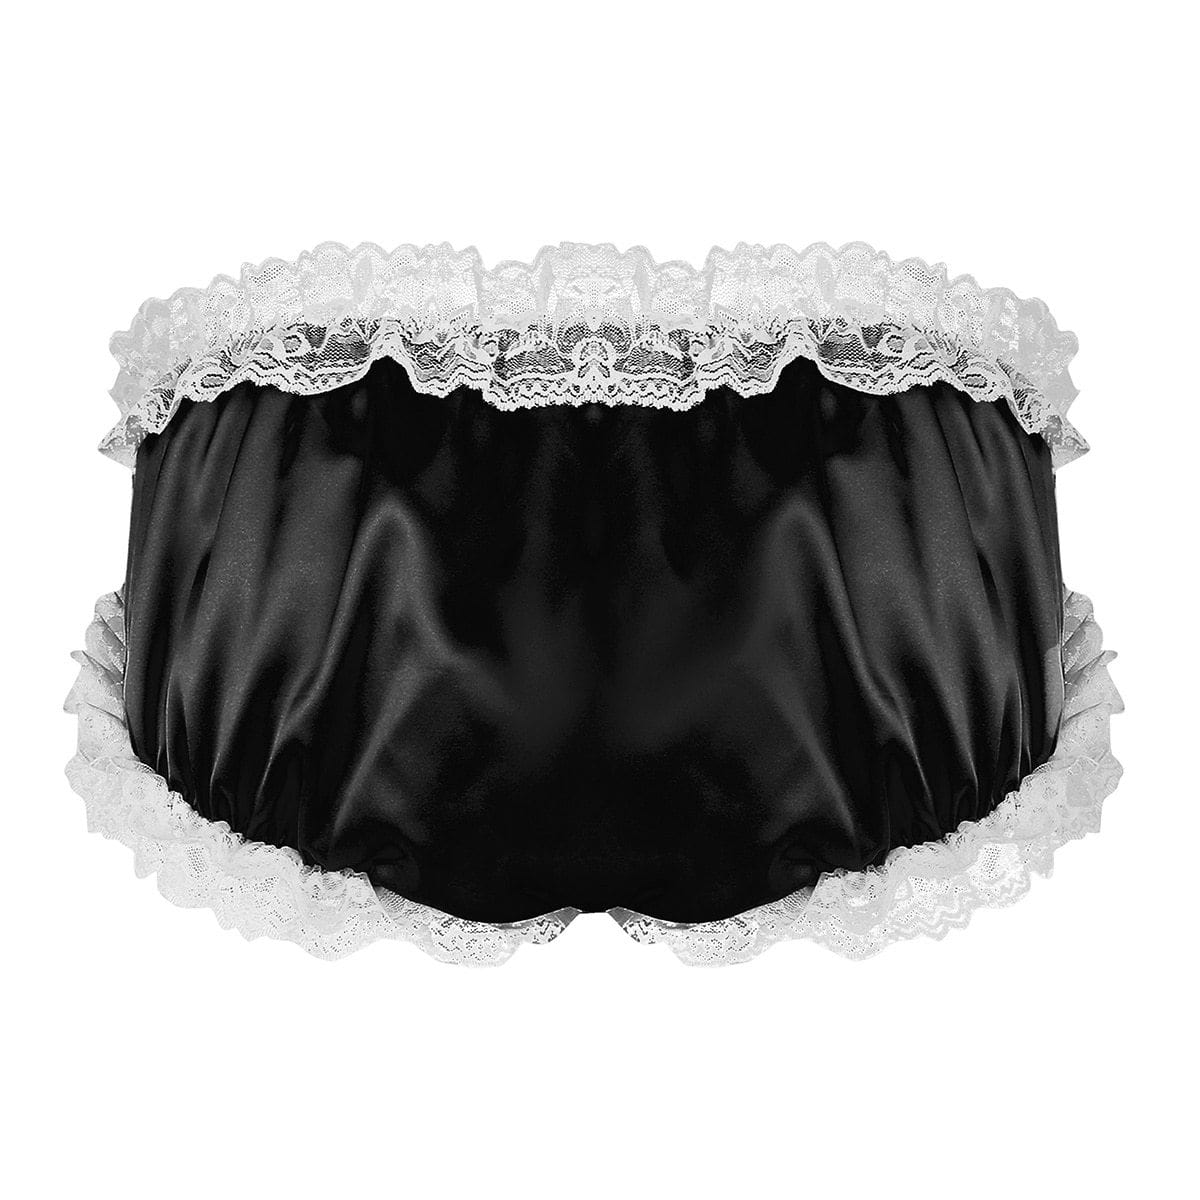 Sissy Underwear for Men, Mens Lingerie Set Erotic, Fetish Top